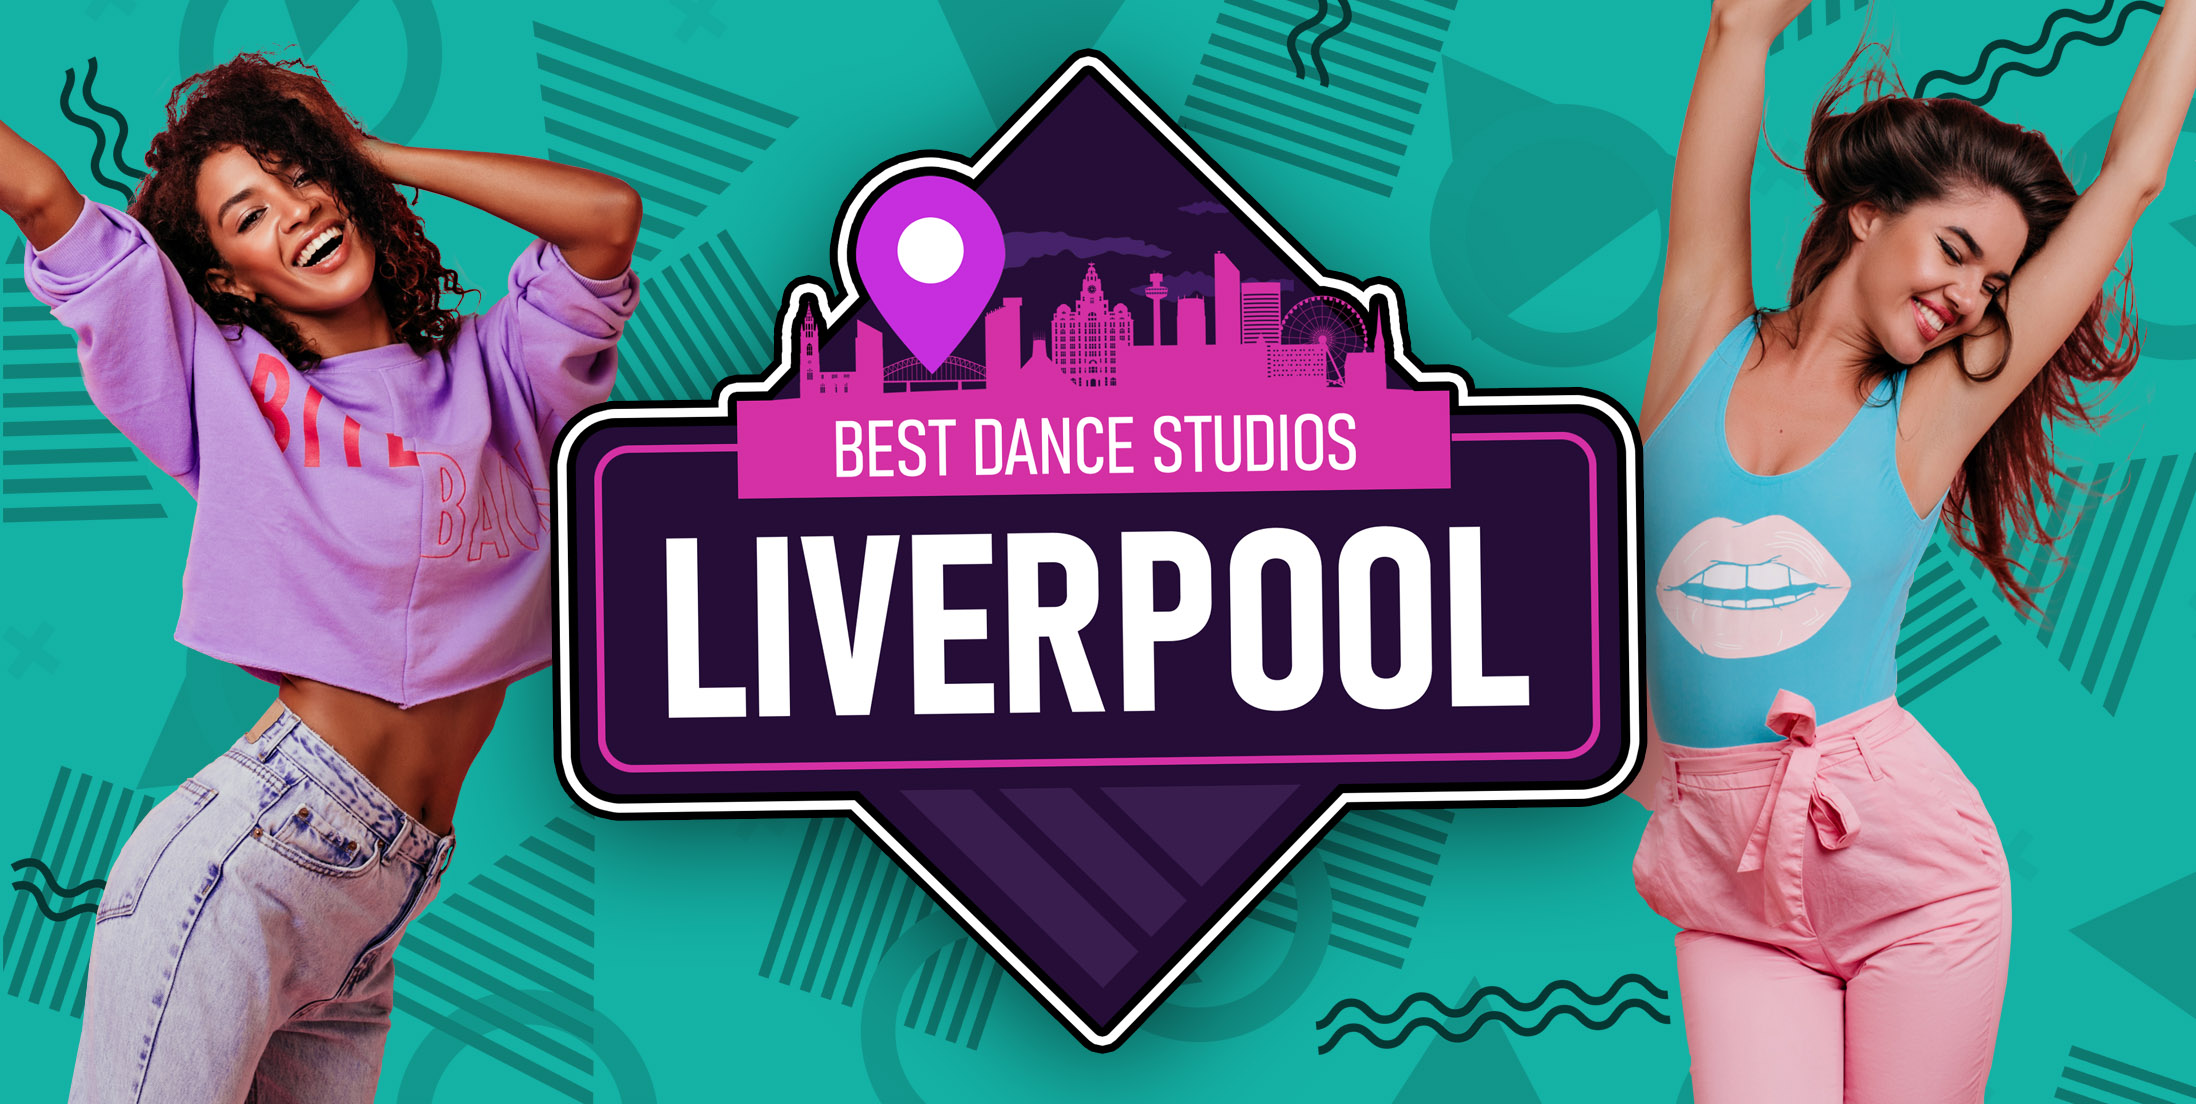 Best Dance Studios in Liverpool